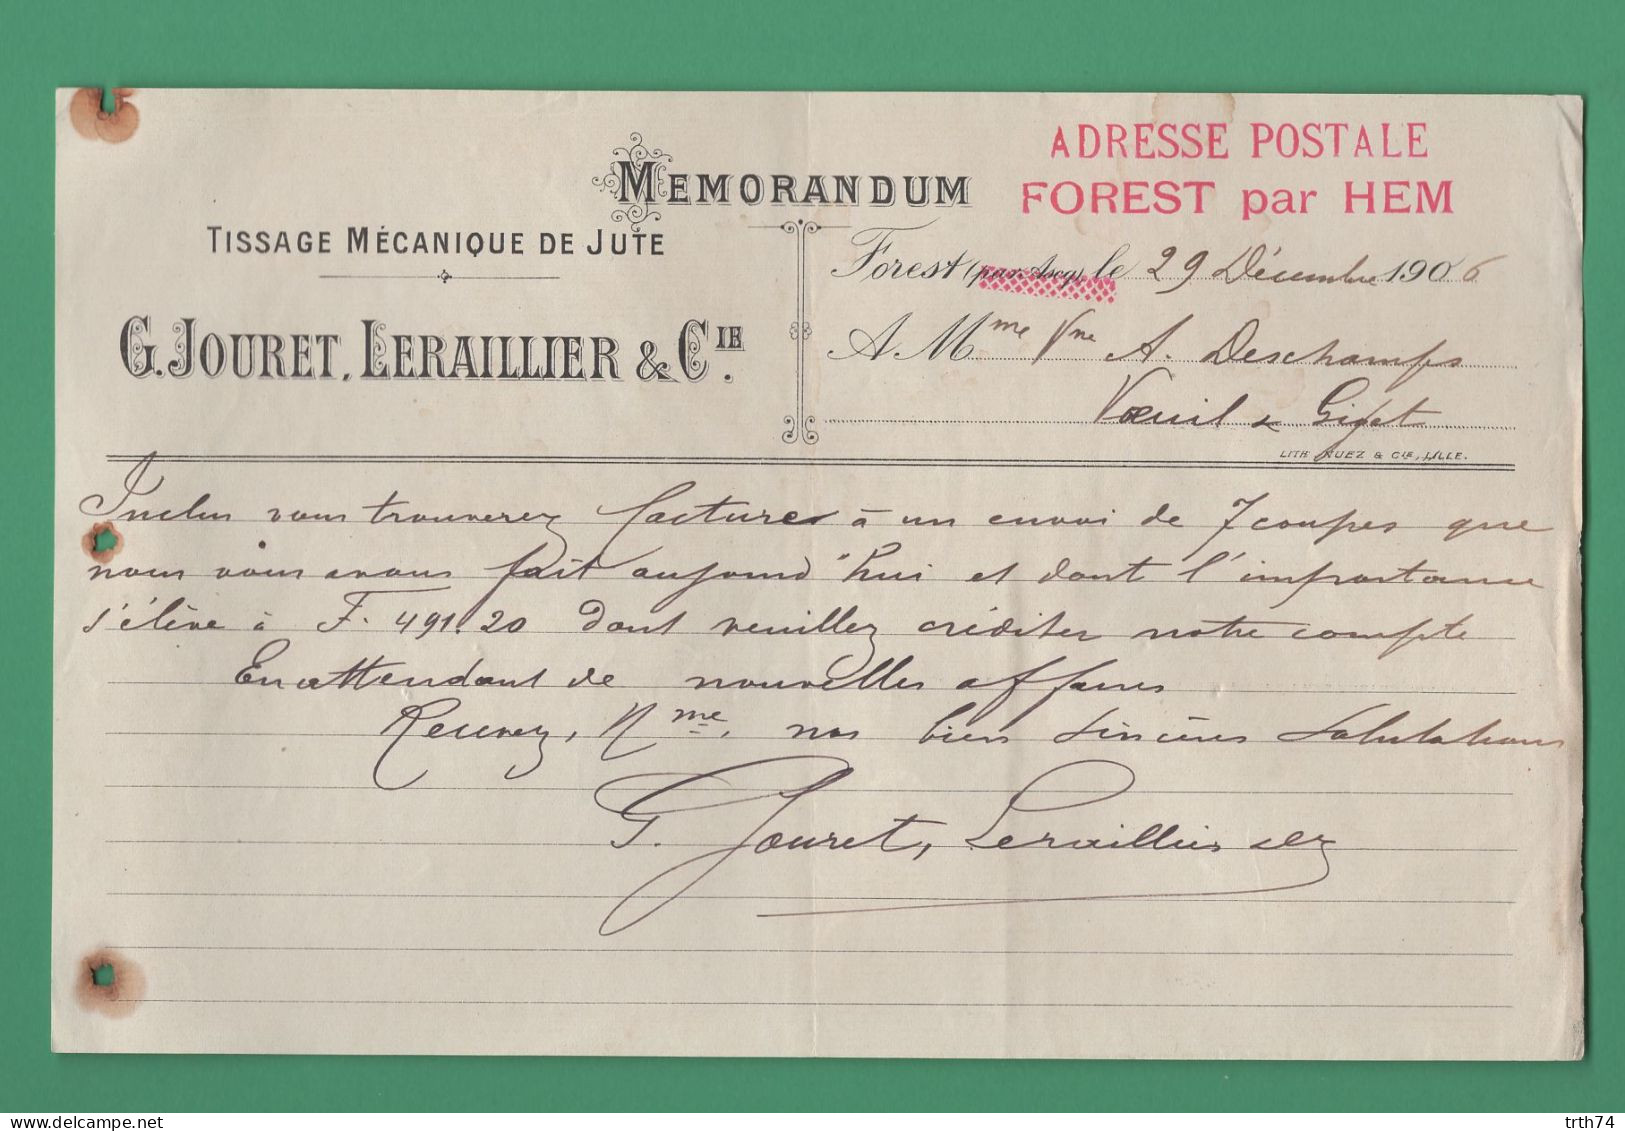 59 Forest Par Hem Ascq Jouret Leraillier Tissage Mécanique De Jute 29 Décembre 1906 - Kleding & Textiel